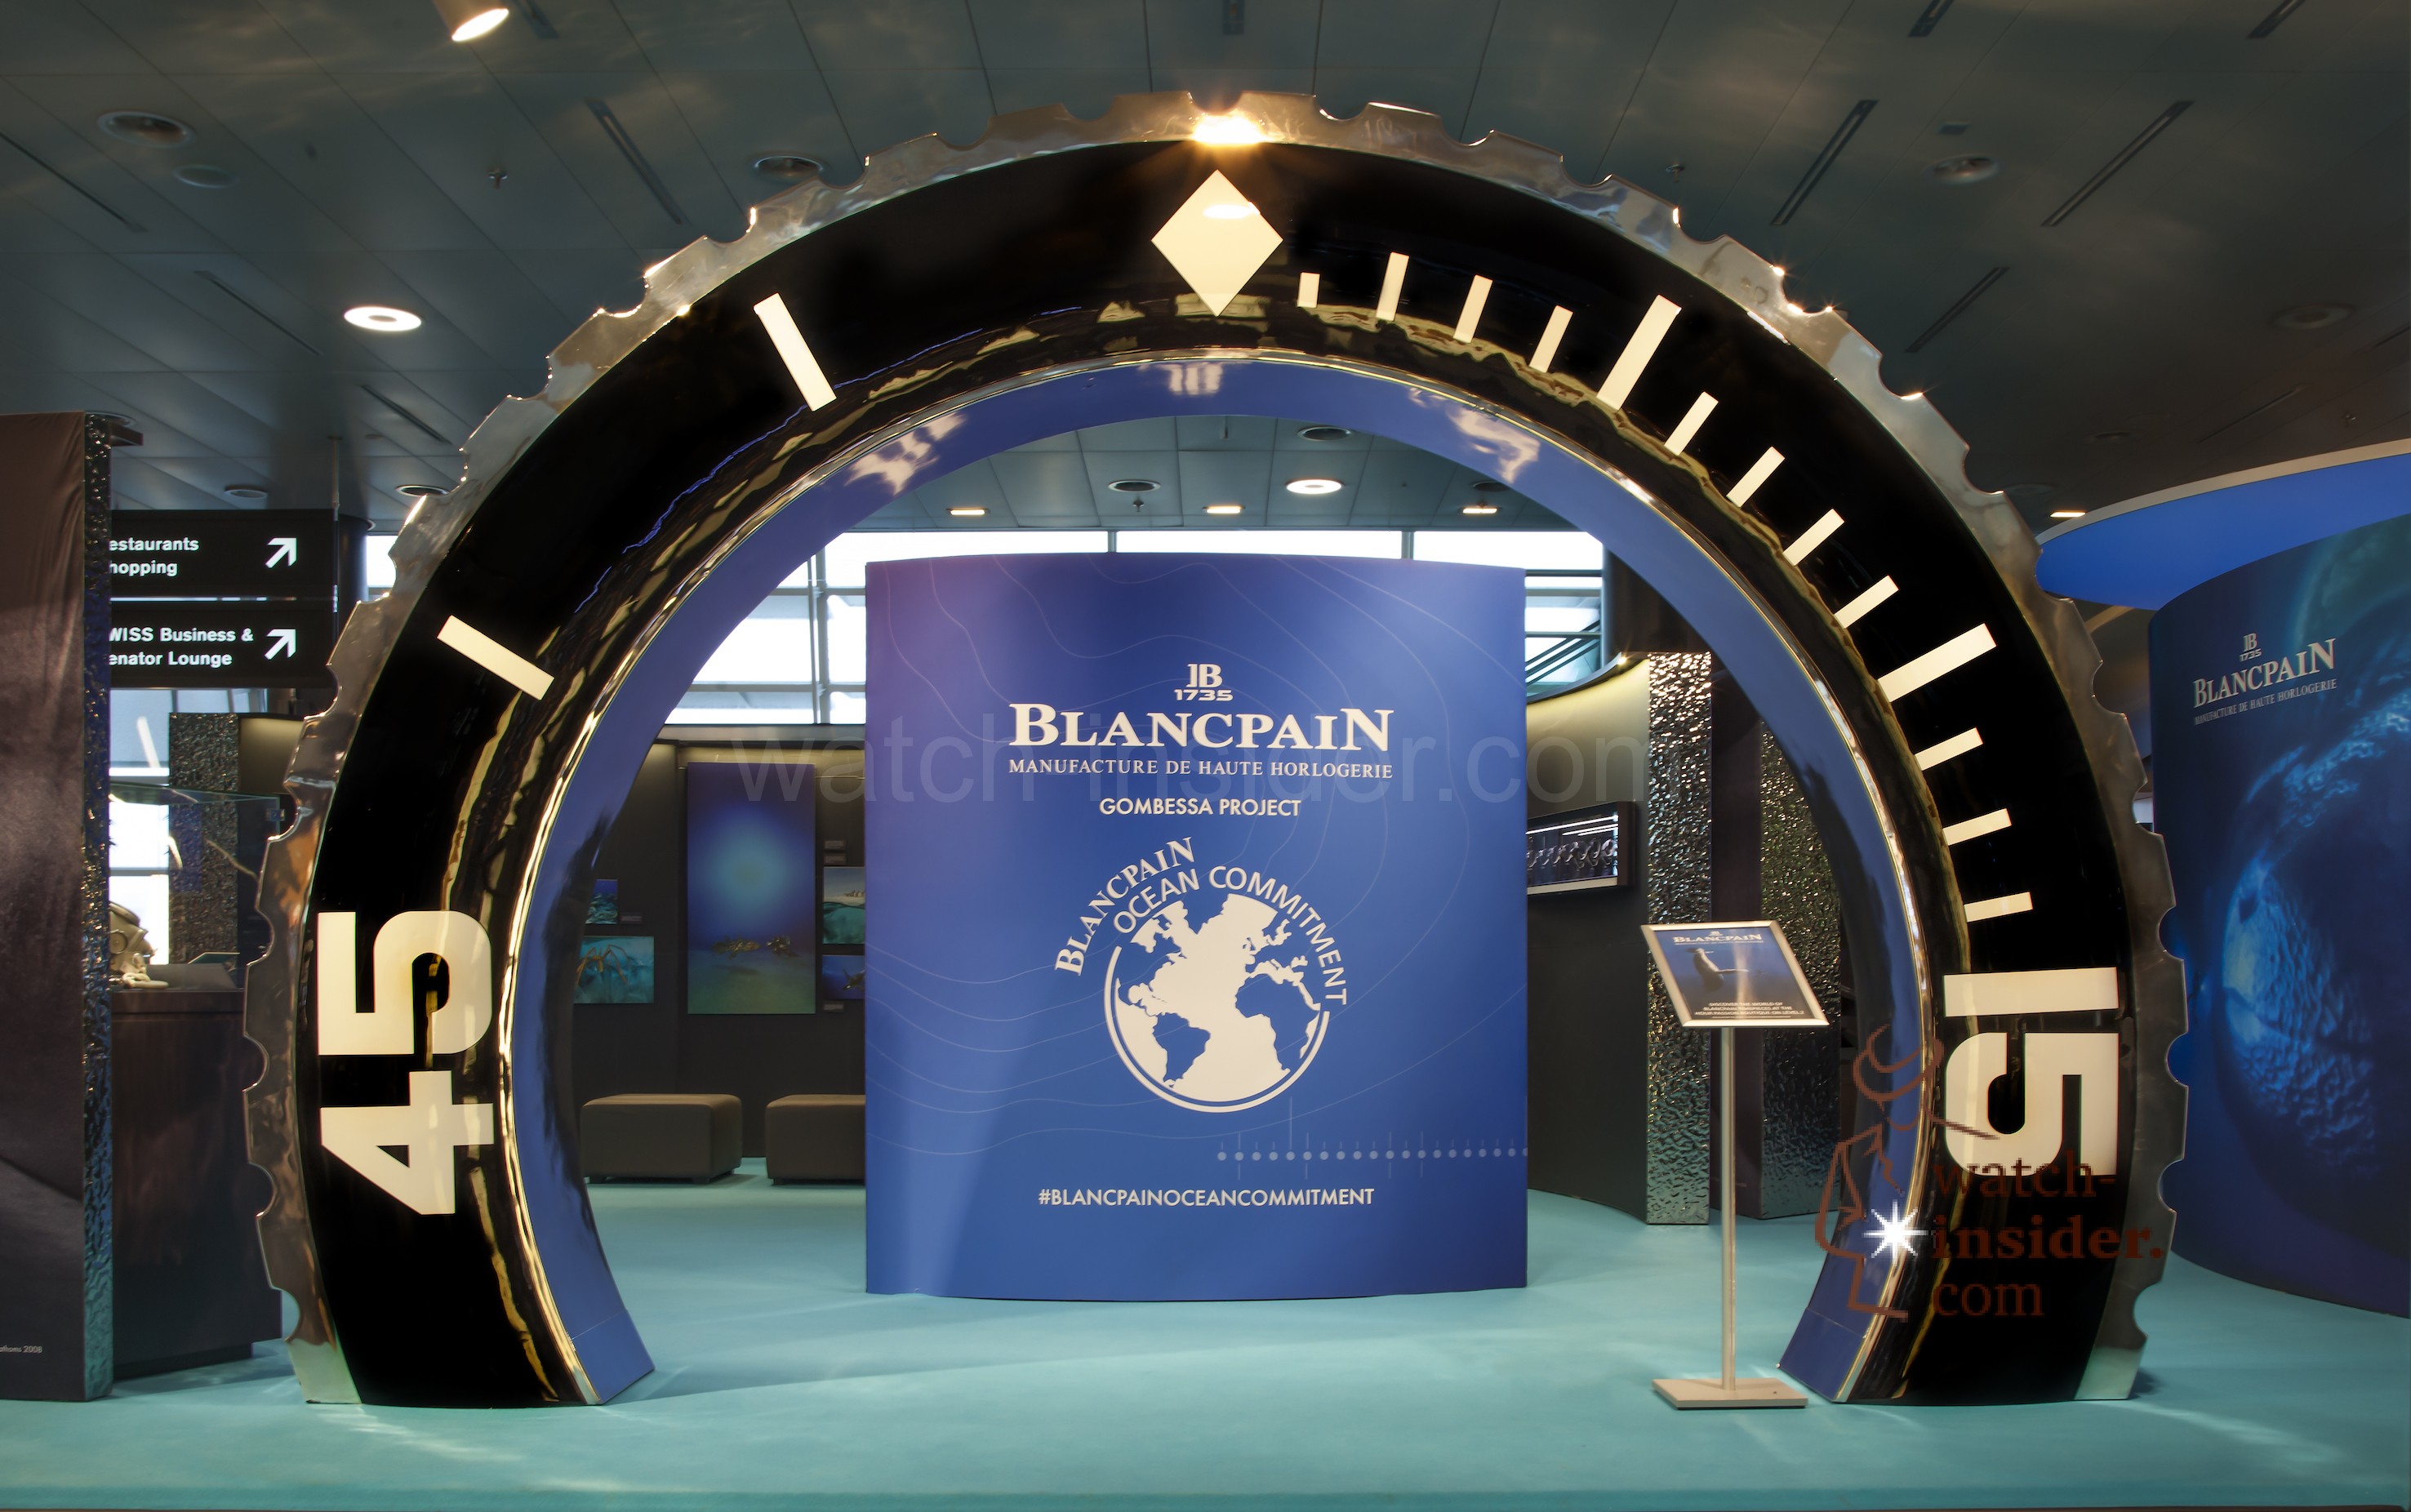 Blancpain Ocean Commitment Exhibition at Zurich (ZRH) Airport